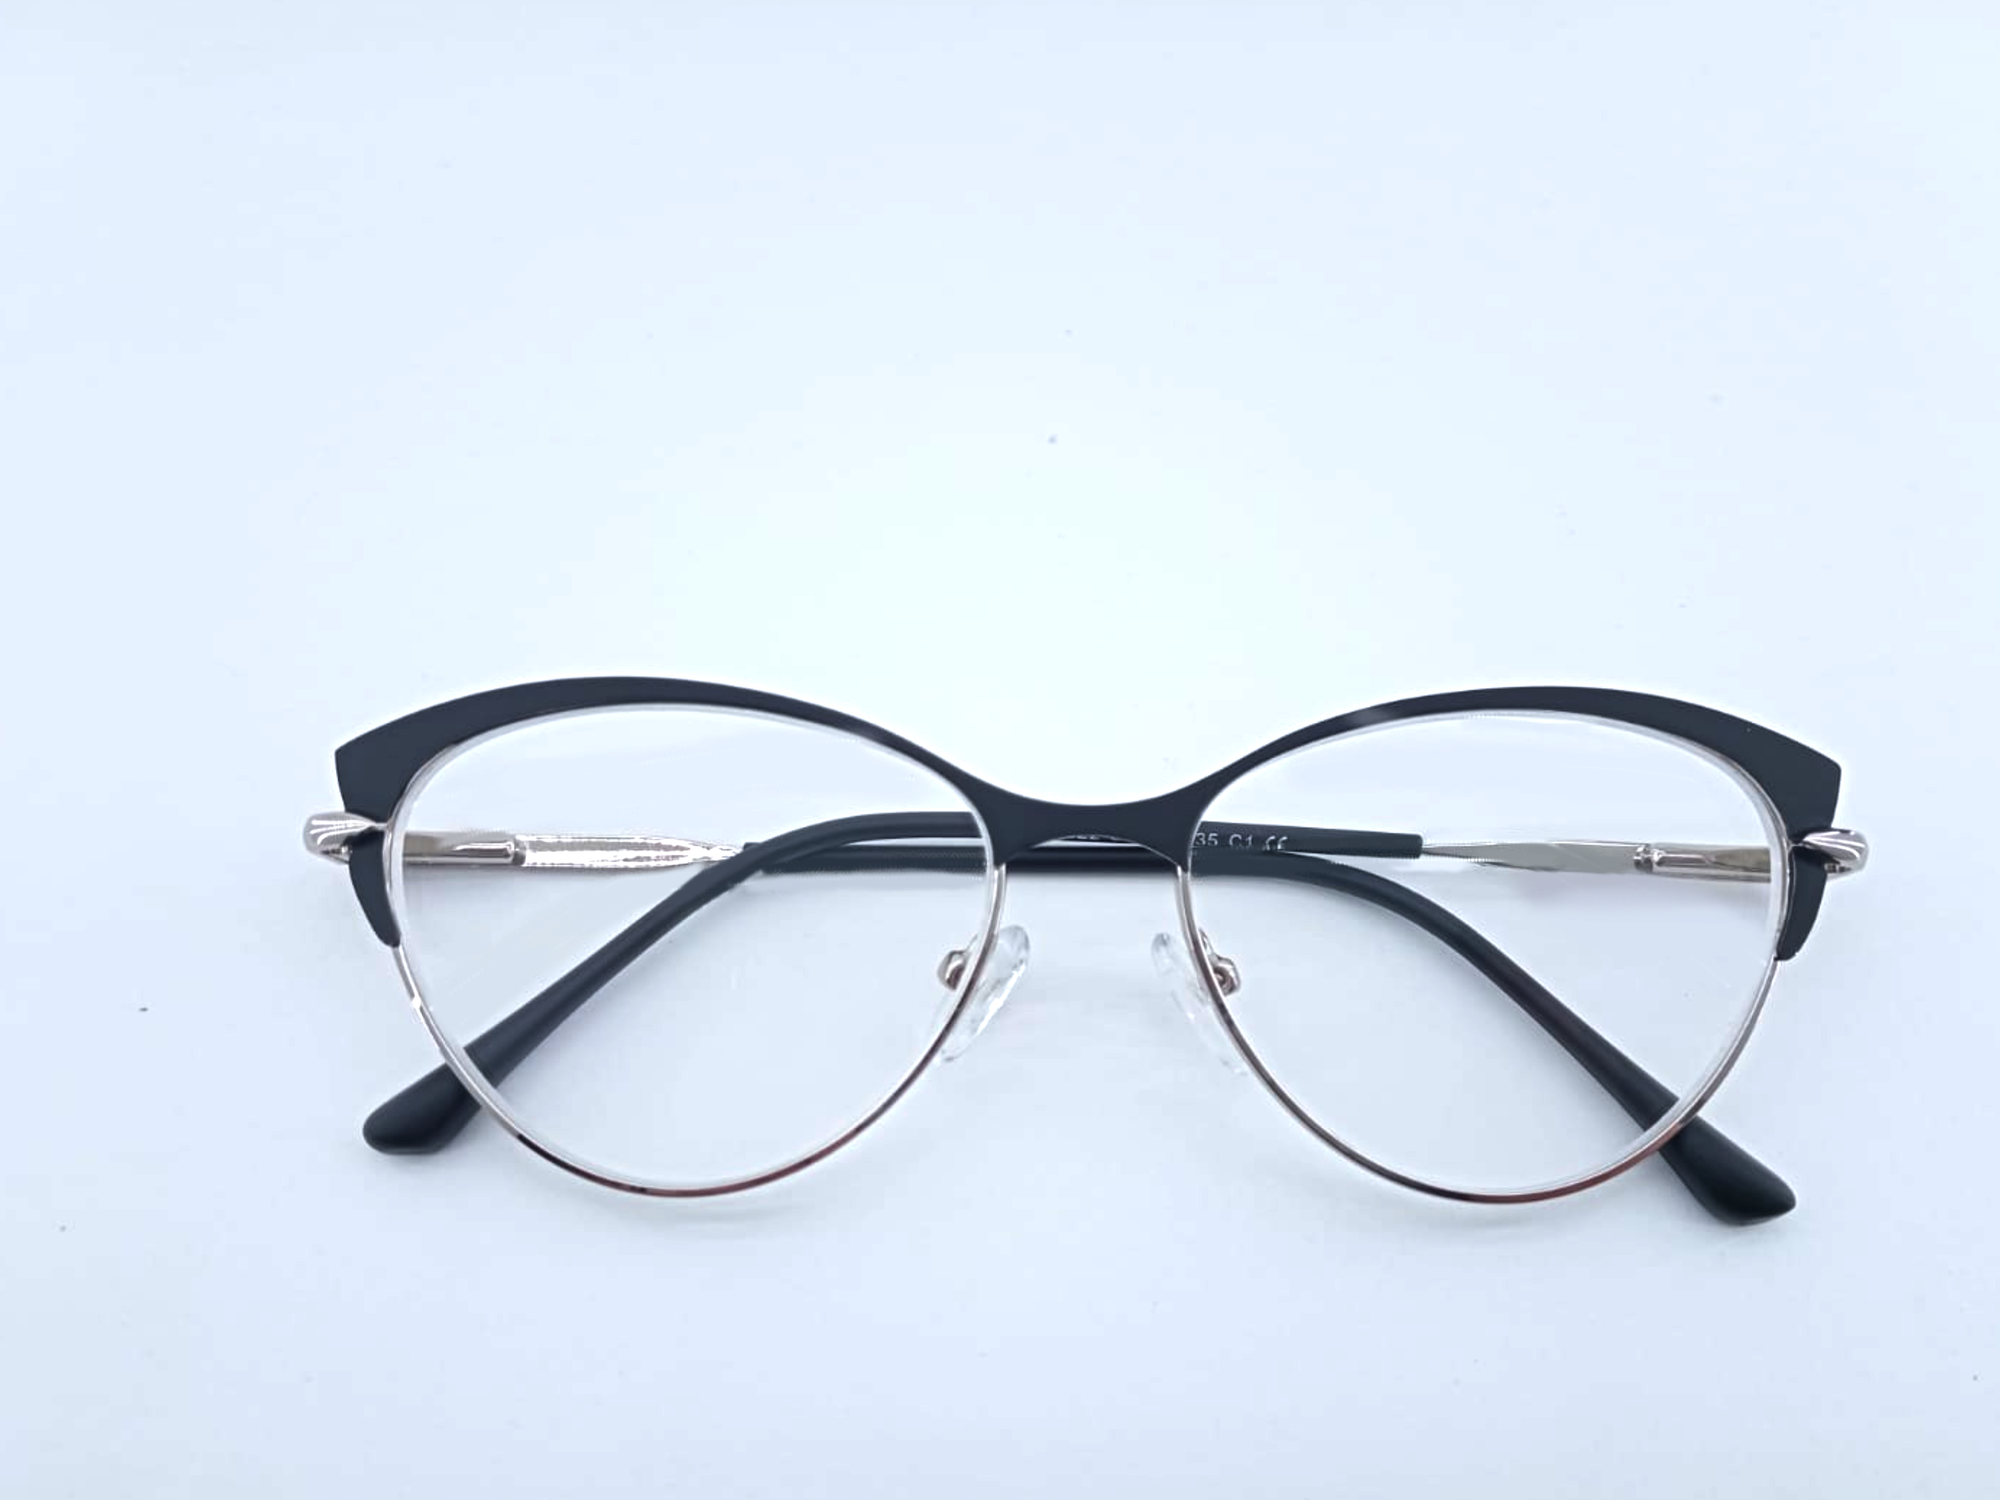 Готовые очки для зрения с межцентровым расстоянием 58-60 мм и диоптриями -3.5